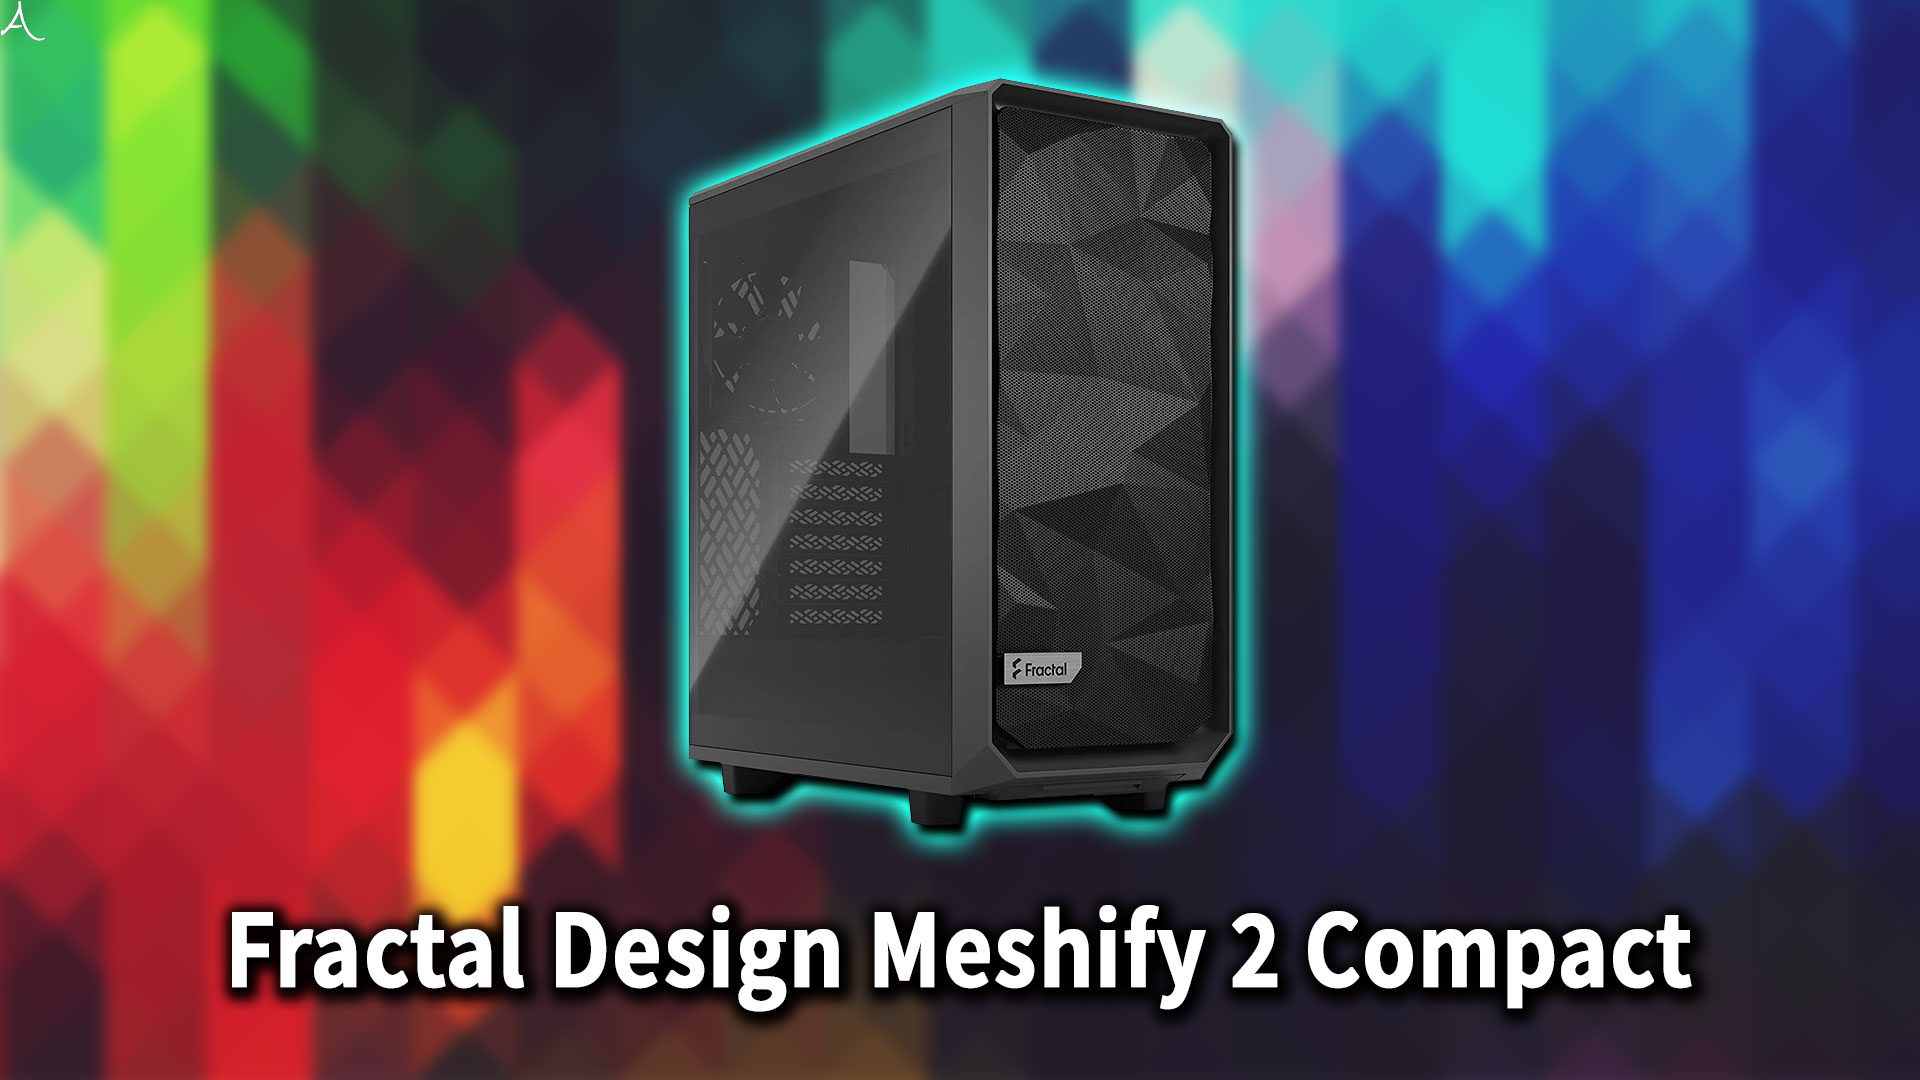 ｢Fractal Design Meshify 2 Compact｣のサイズ・大きさはどれくらい？